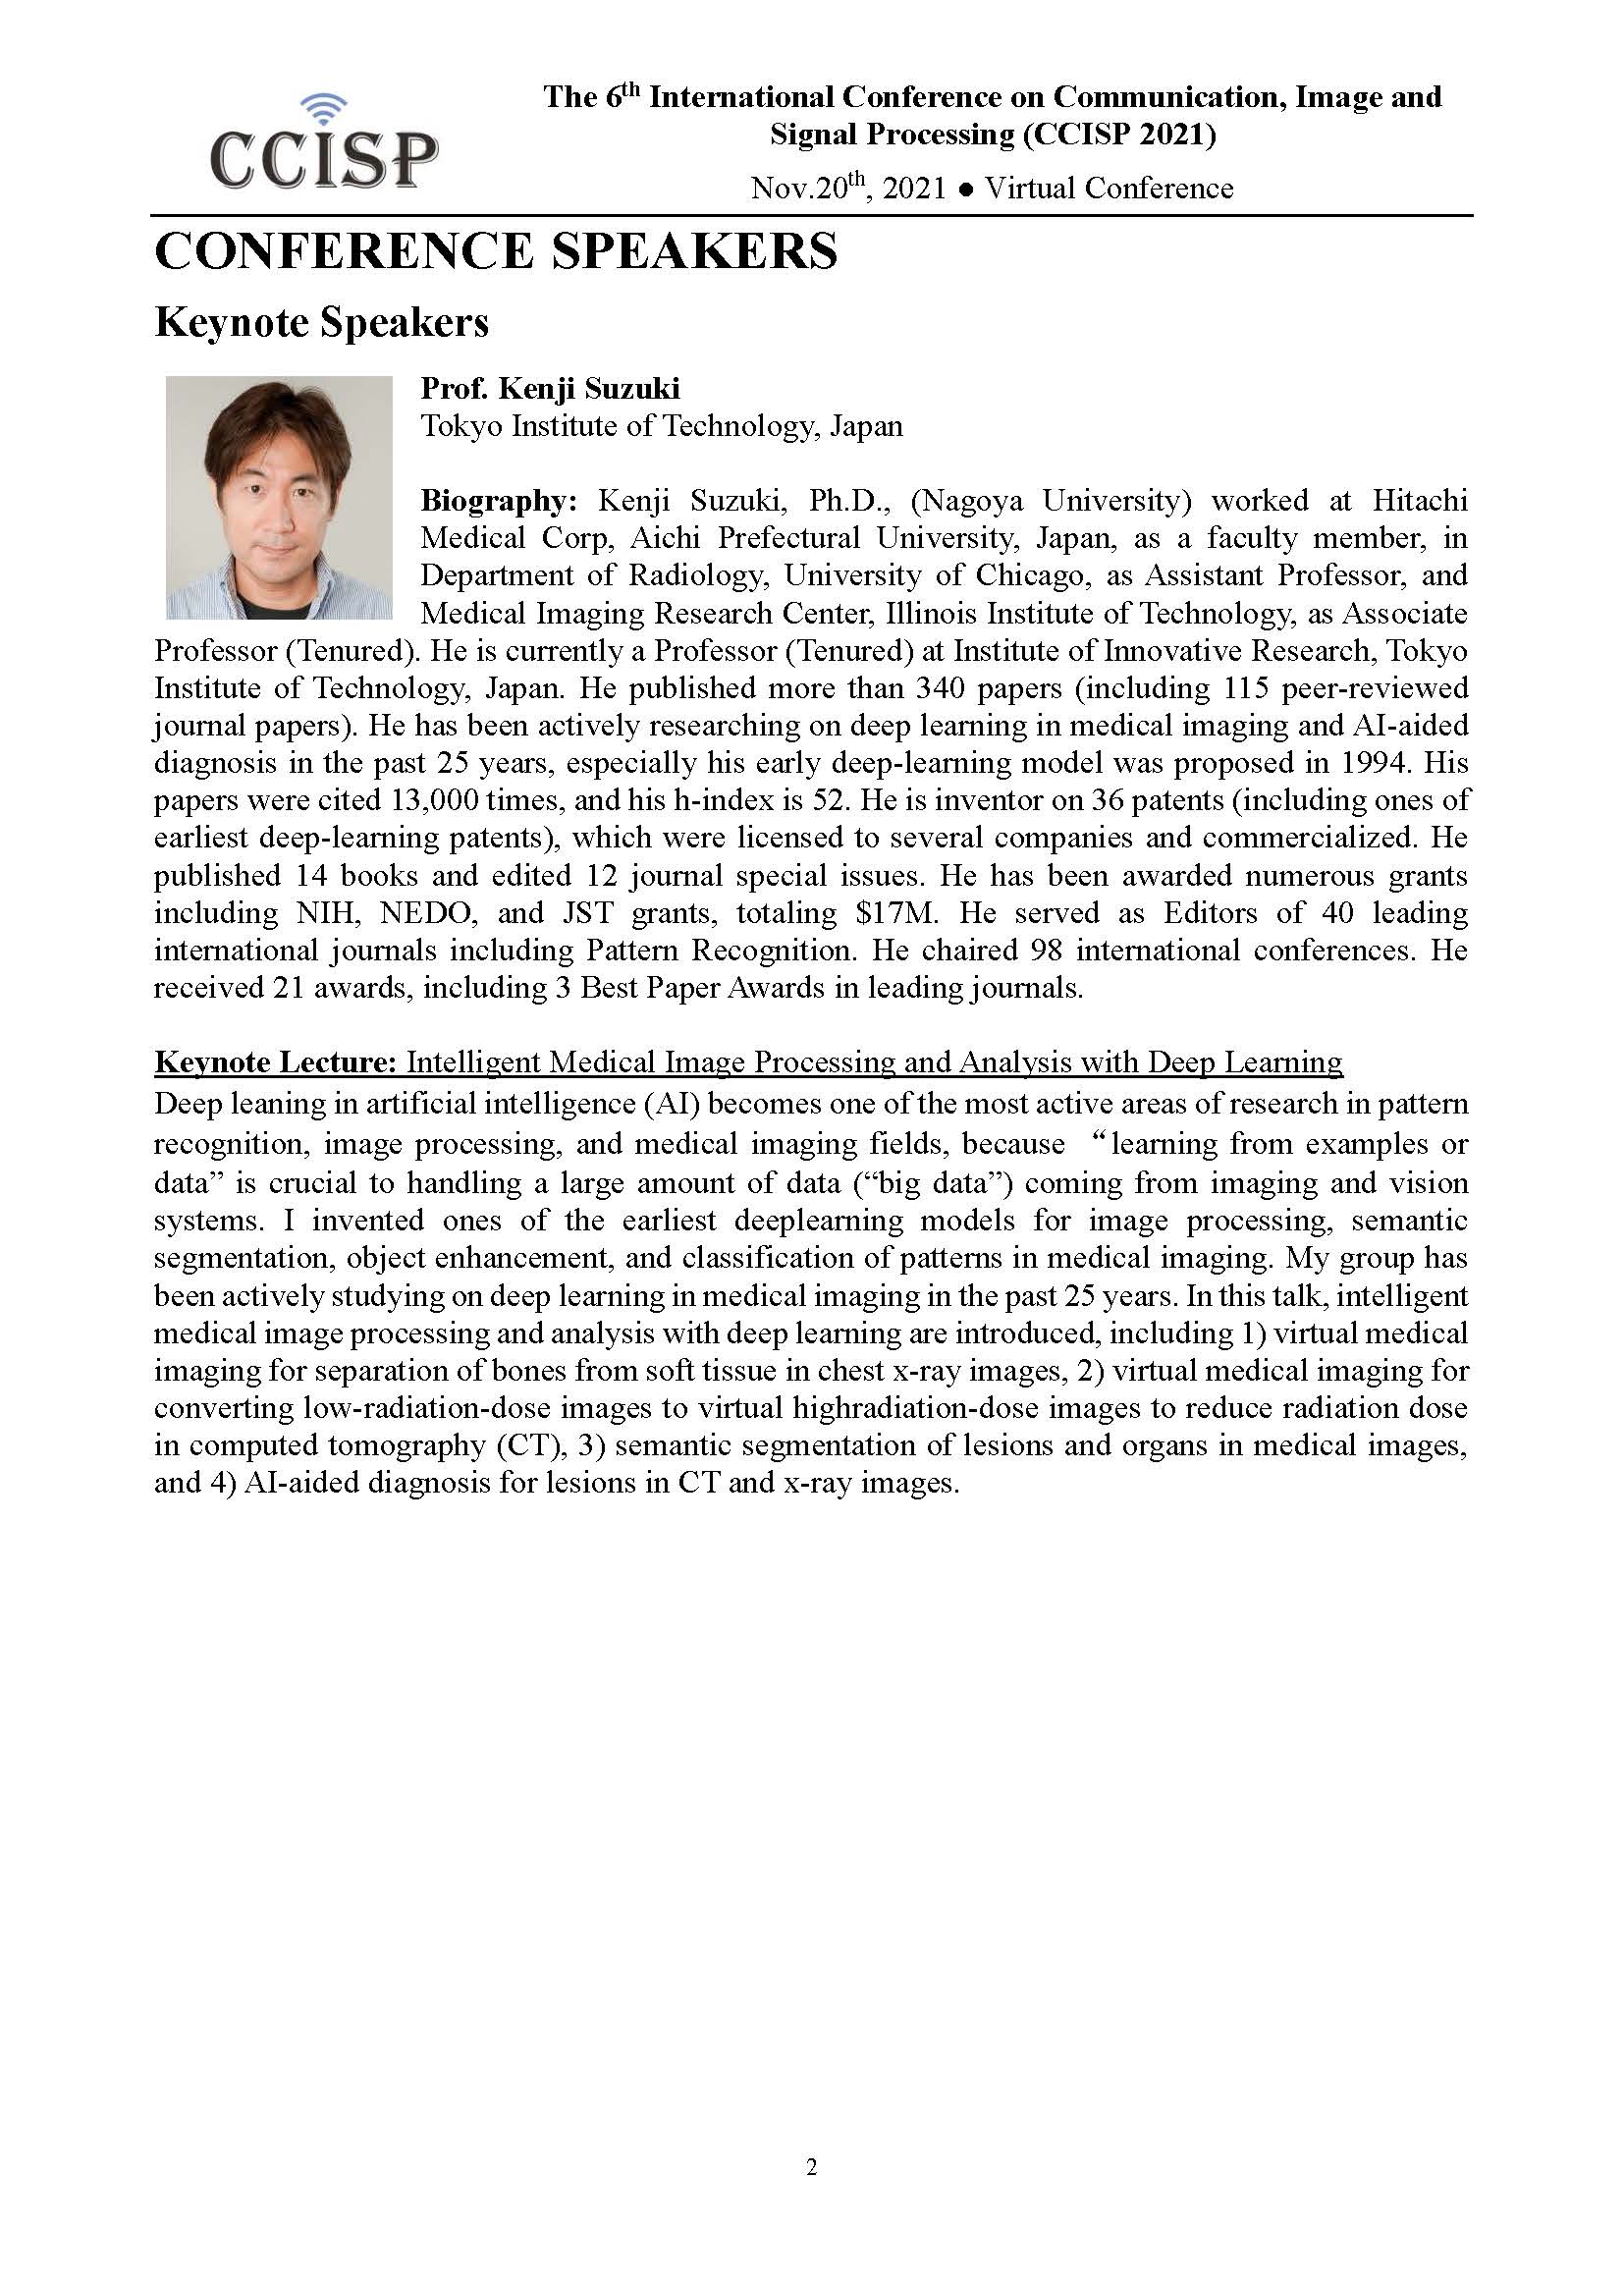 鈴木教授がCCISP 2021で基調講演を行います